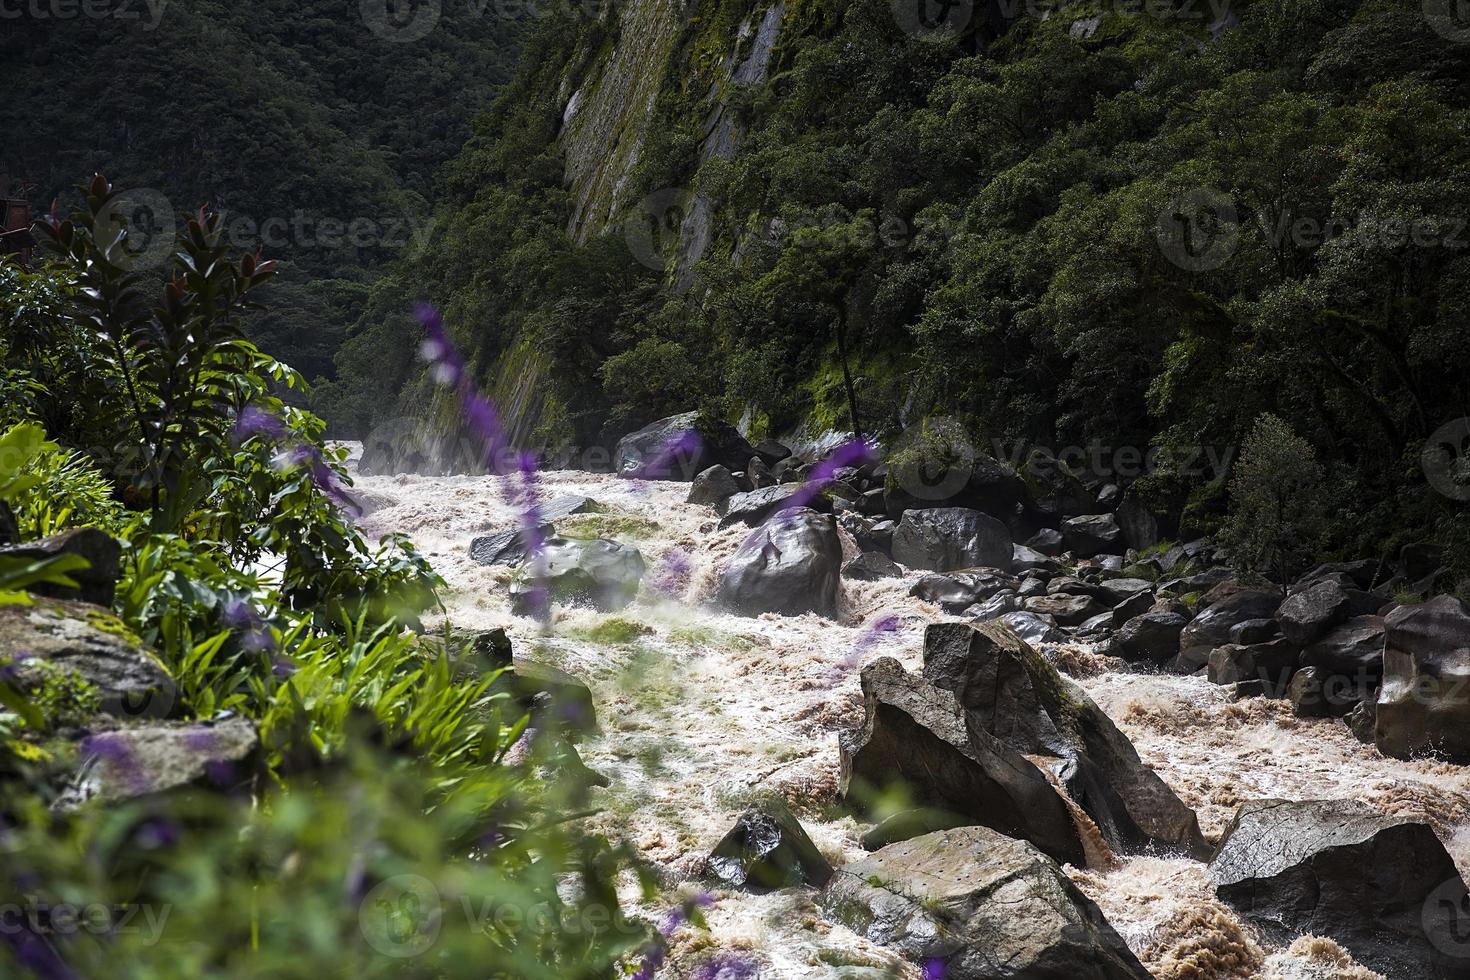 río urubamba en perú foto